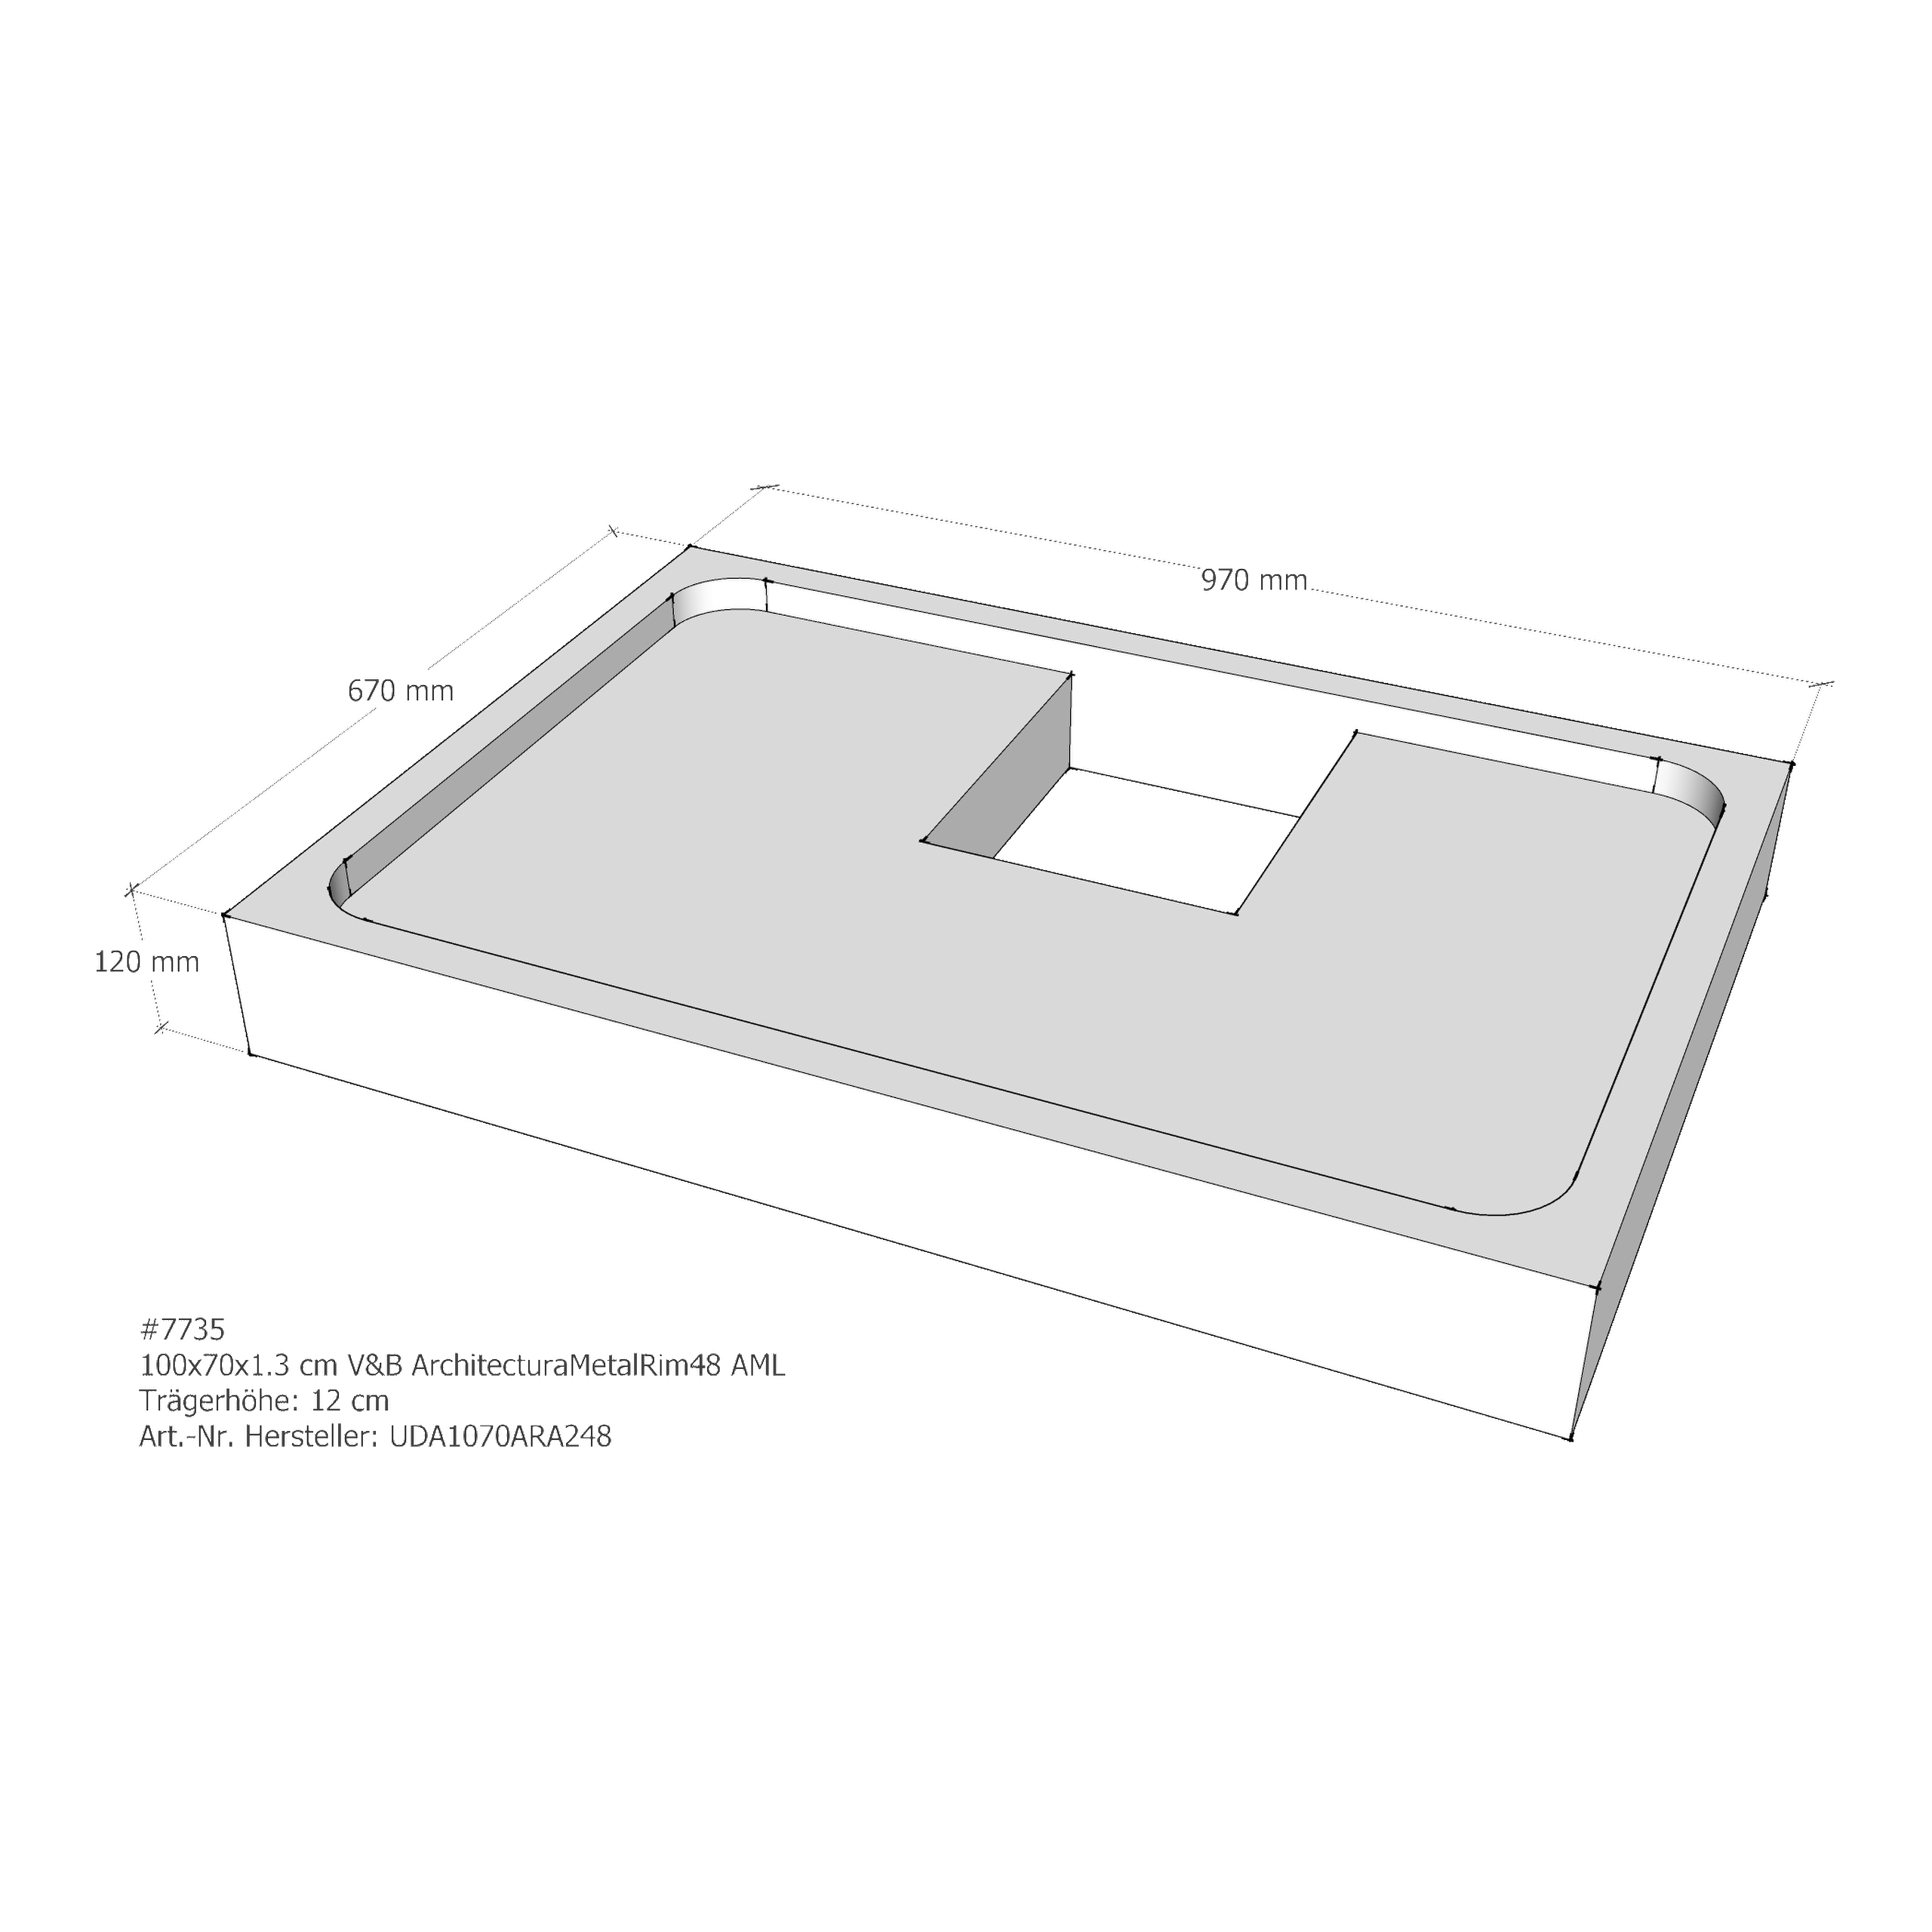 Duschwannenträger für Villeroy & Boch Architectura MetalRim 100 × 70 × 1,3 cm